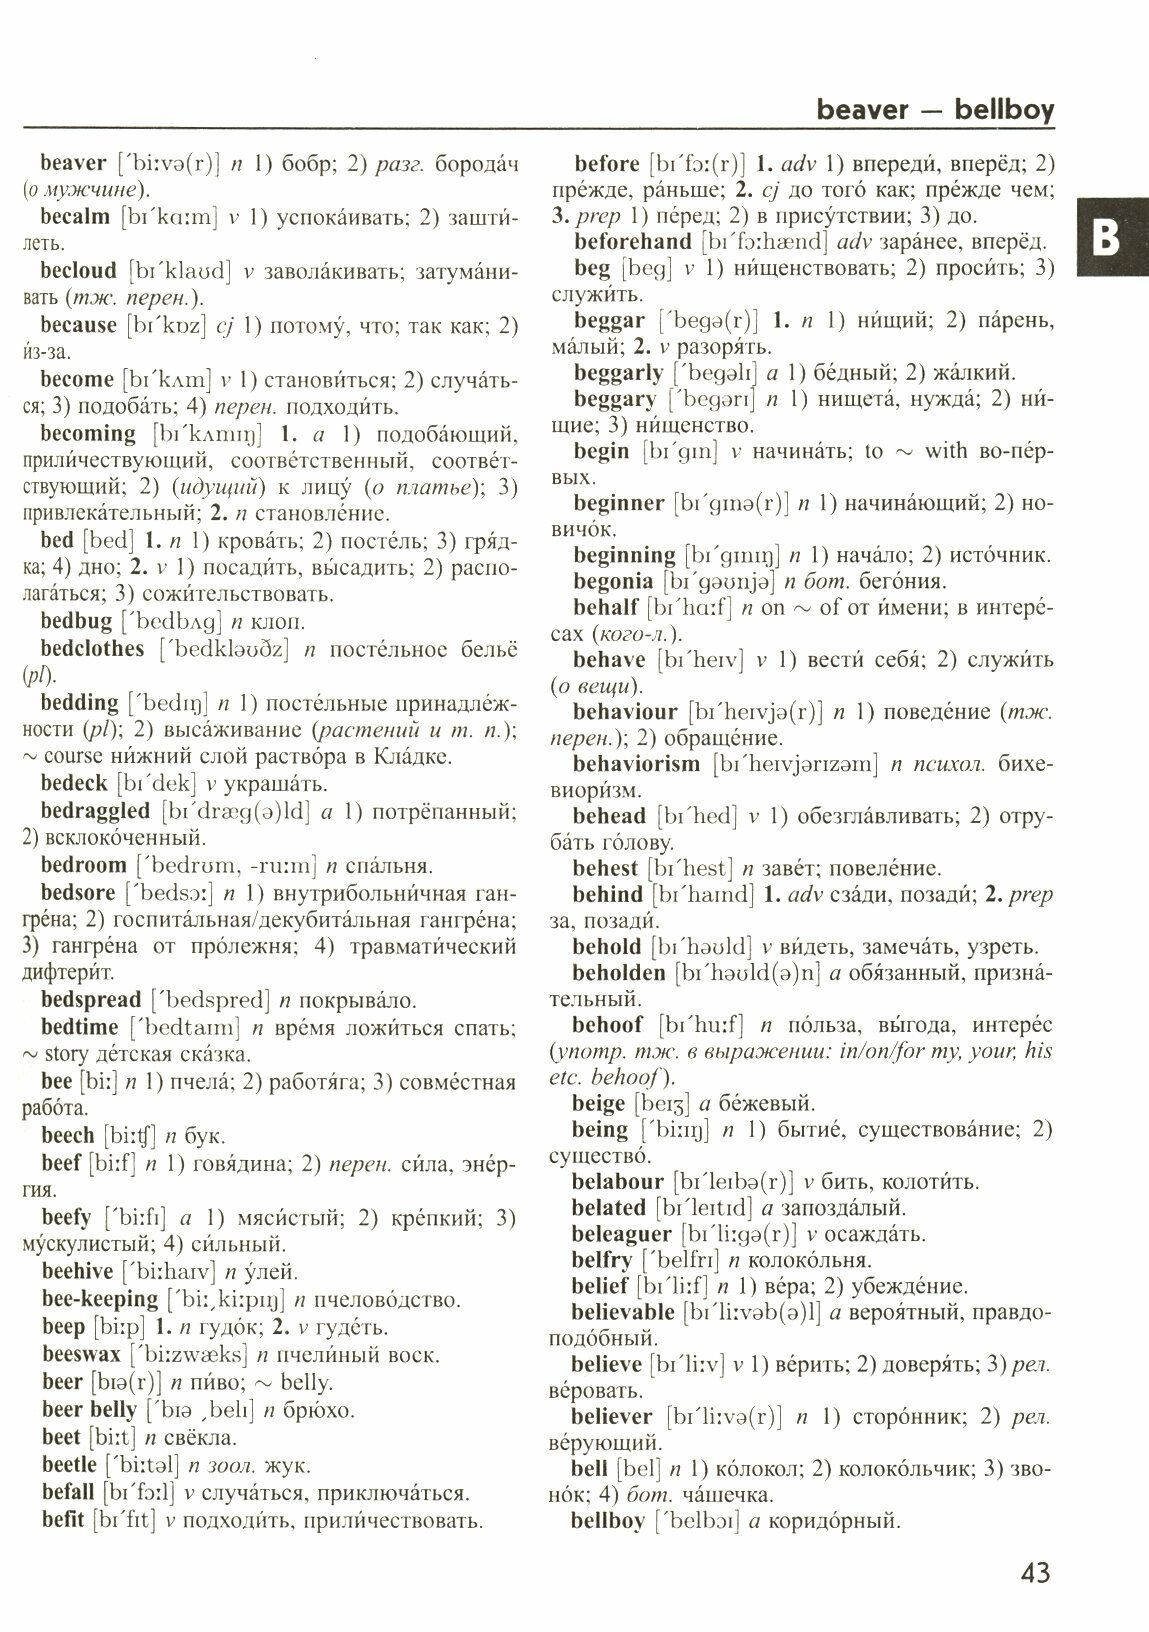 Большой англо-русский русско-английский словарь Мюллера 350 000 слов и словосочетаний с 2-х сторонней транскрипцией